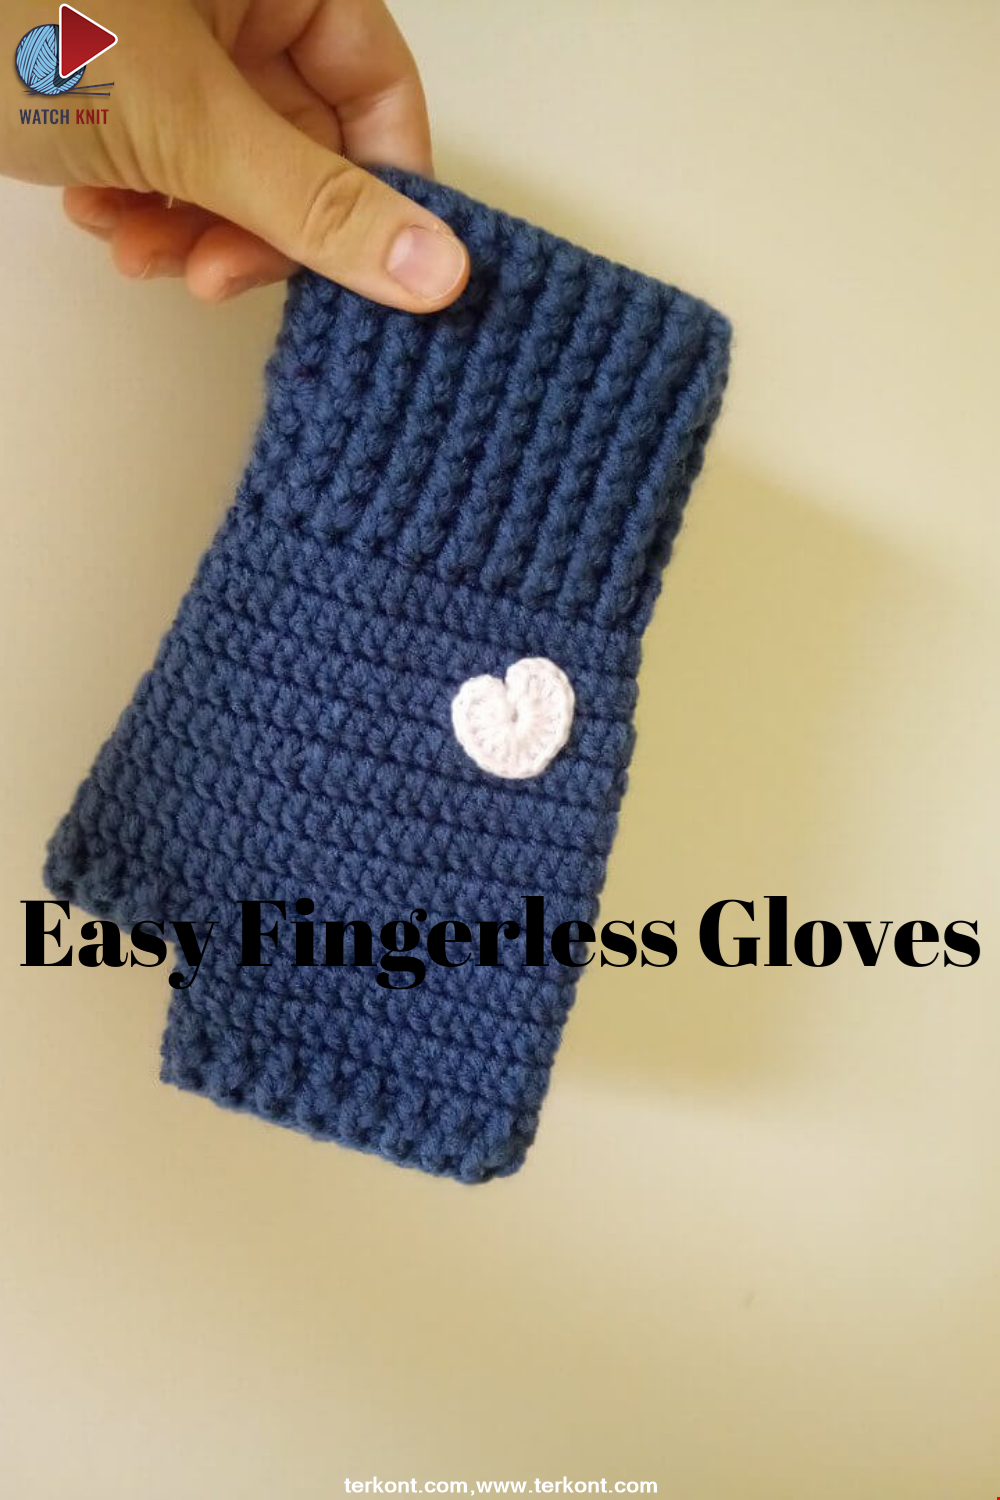 How to Make Easy Crochet Fingerless Gloves